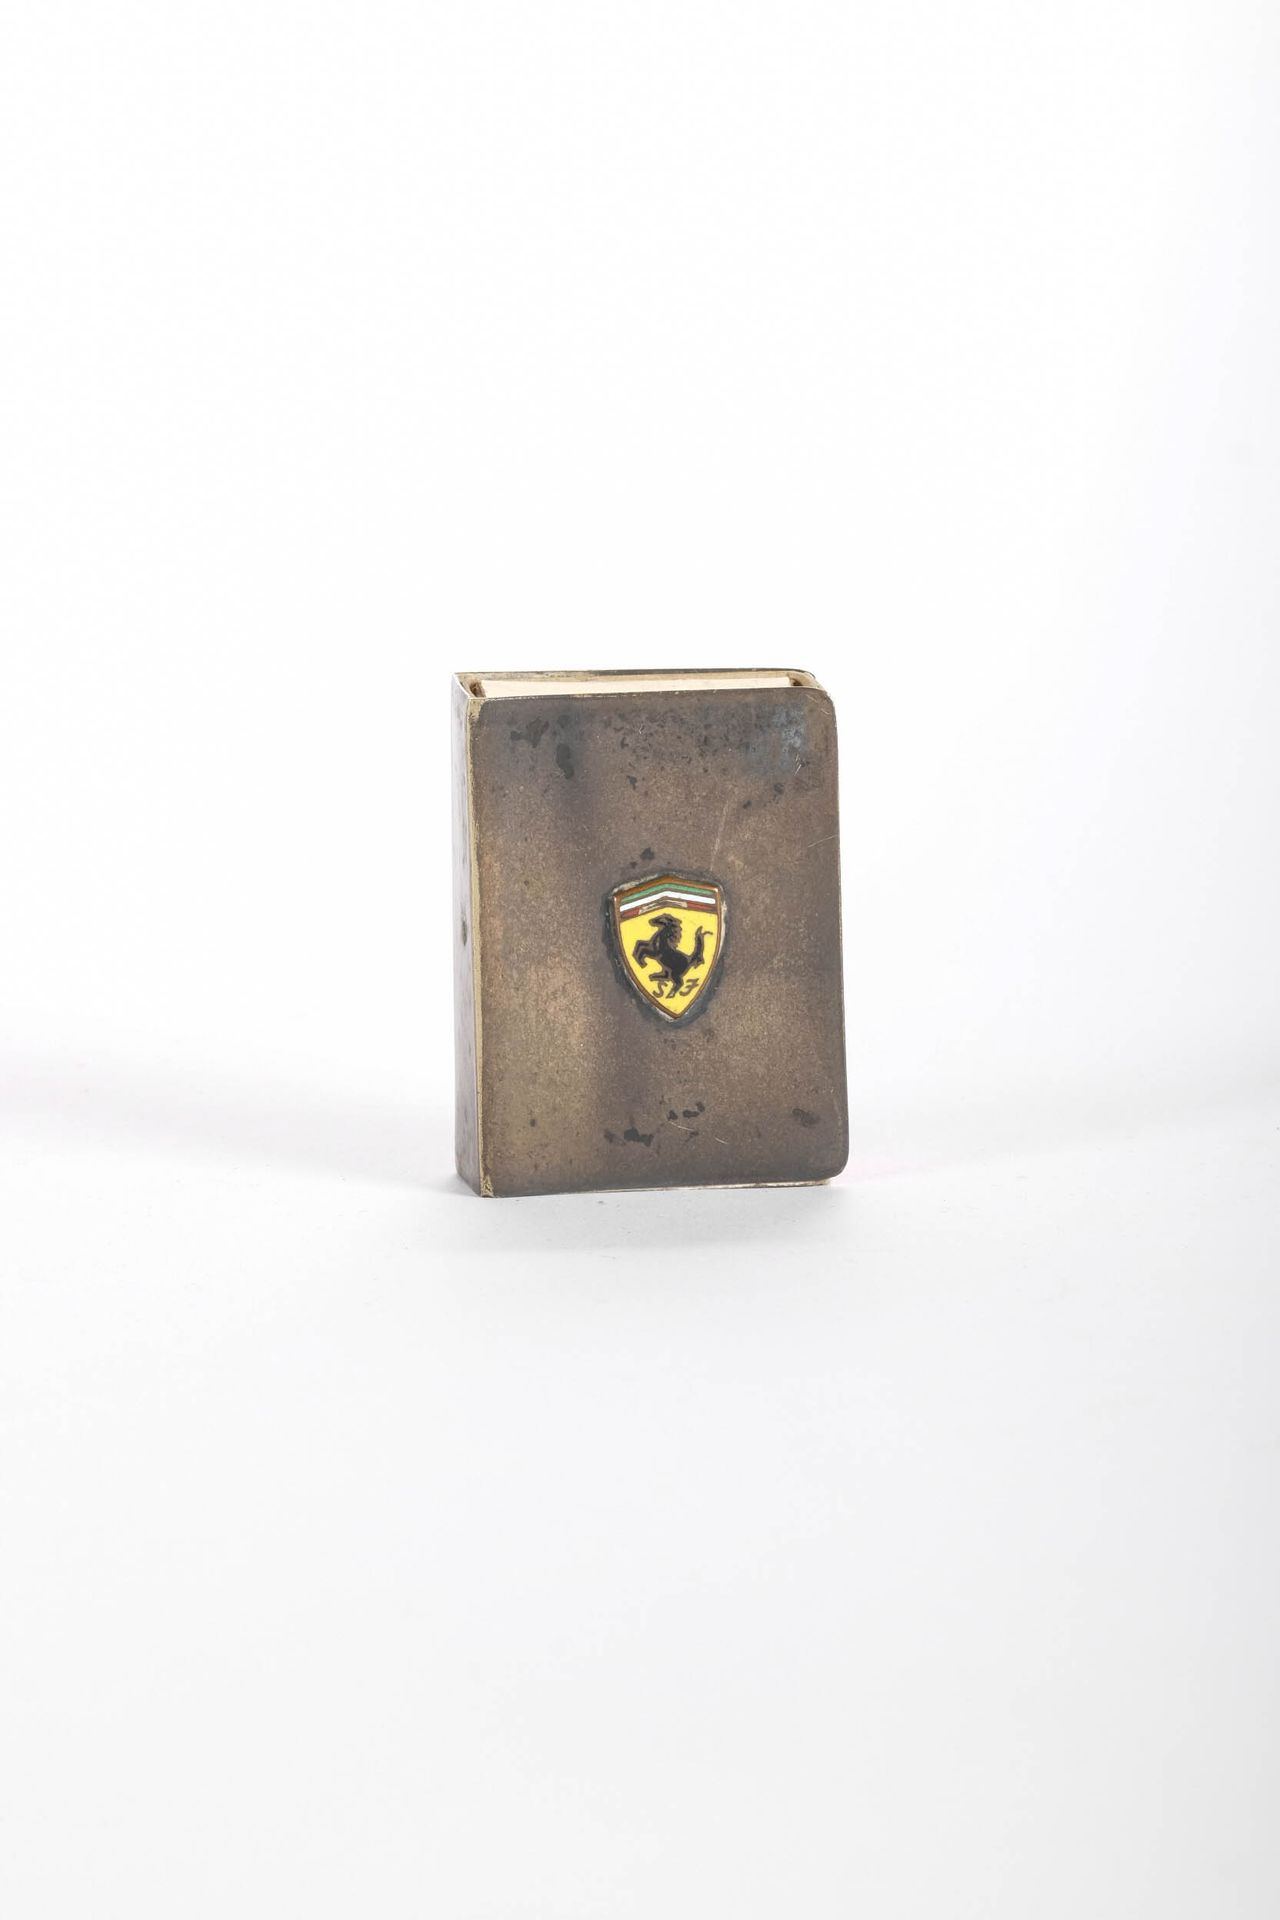 FERRARI Scatola di fiammiferi argentata, logo Ferrari in smalto cloisonne.